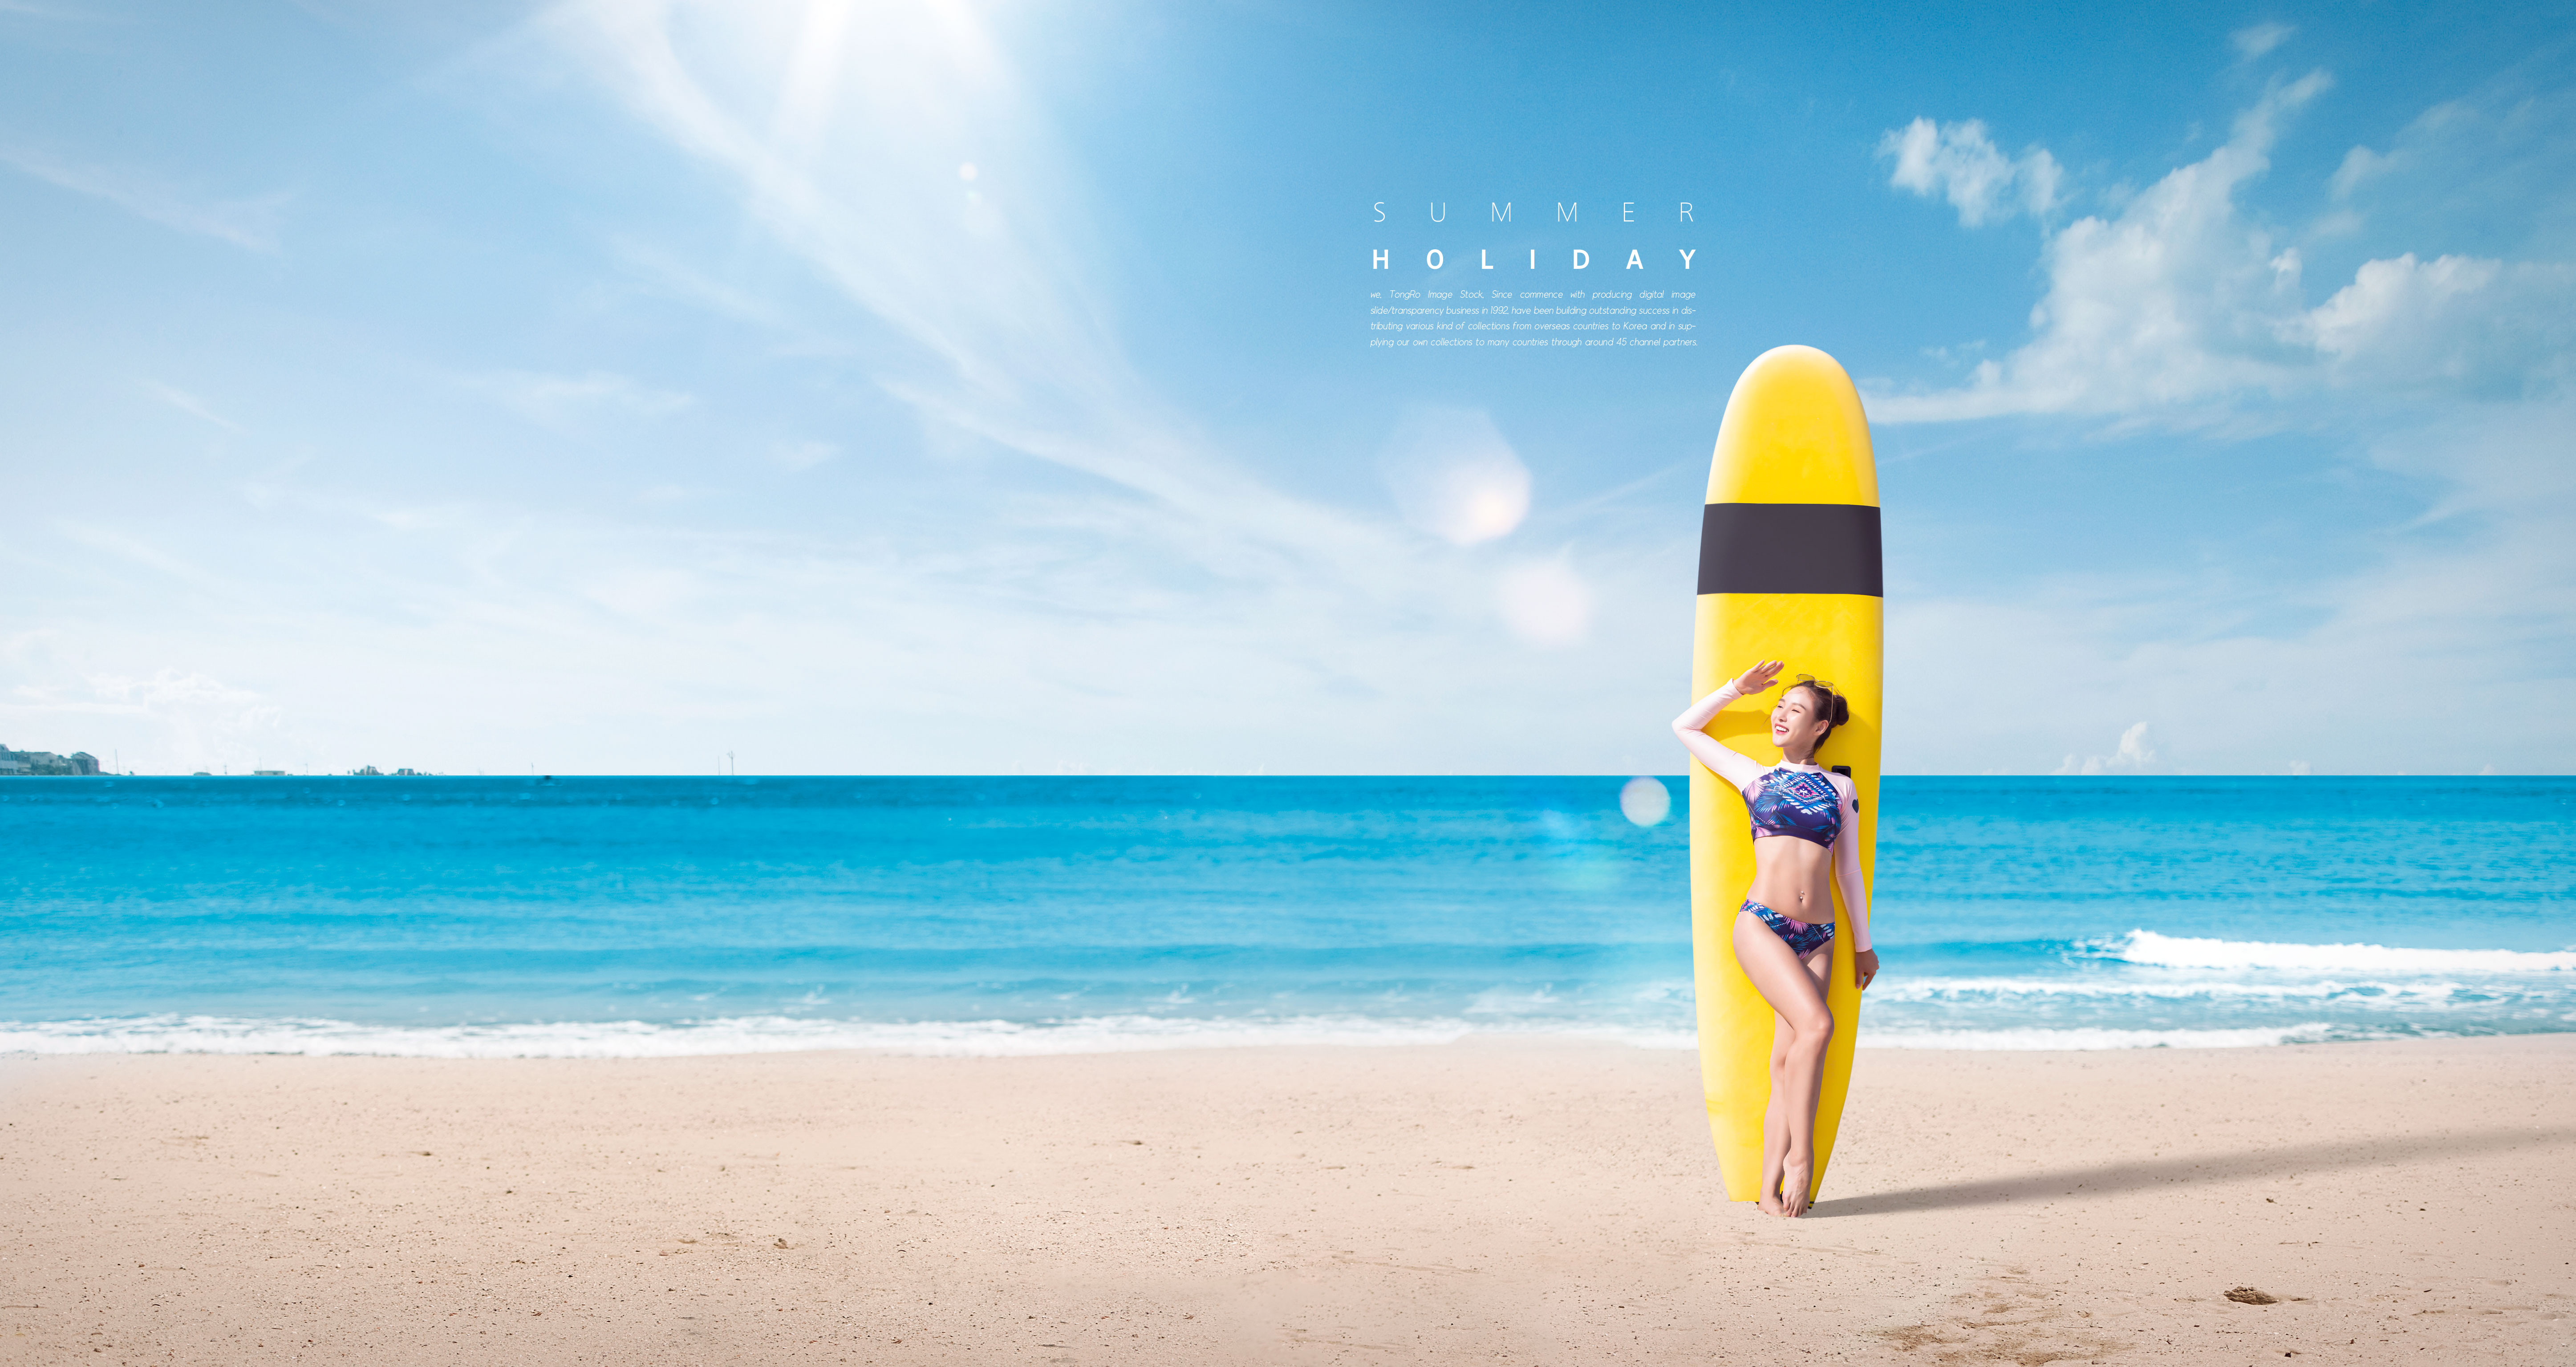 夏季海滩旅行度假活动广告海报模板套装[PSD]插图(4)